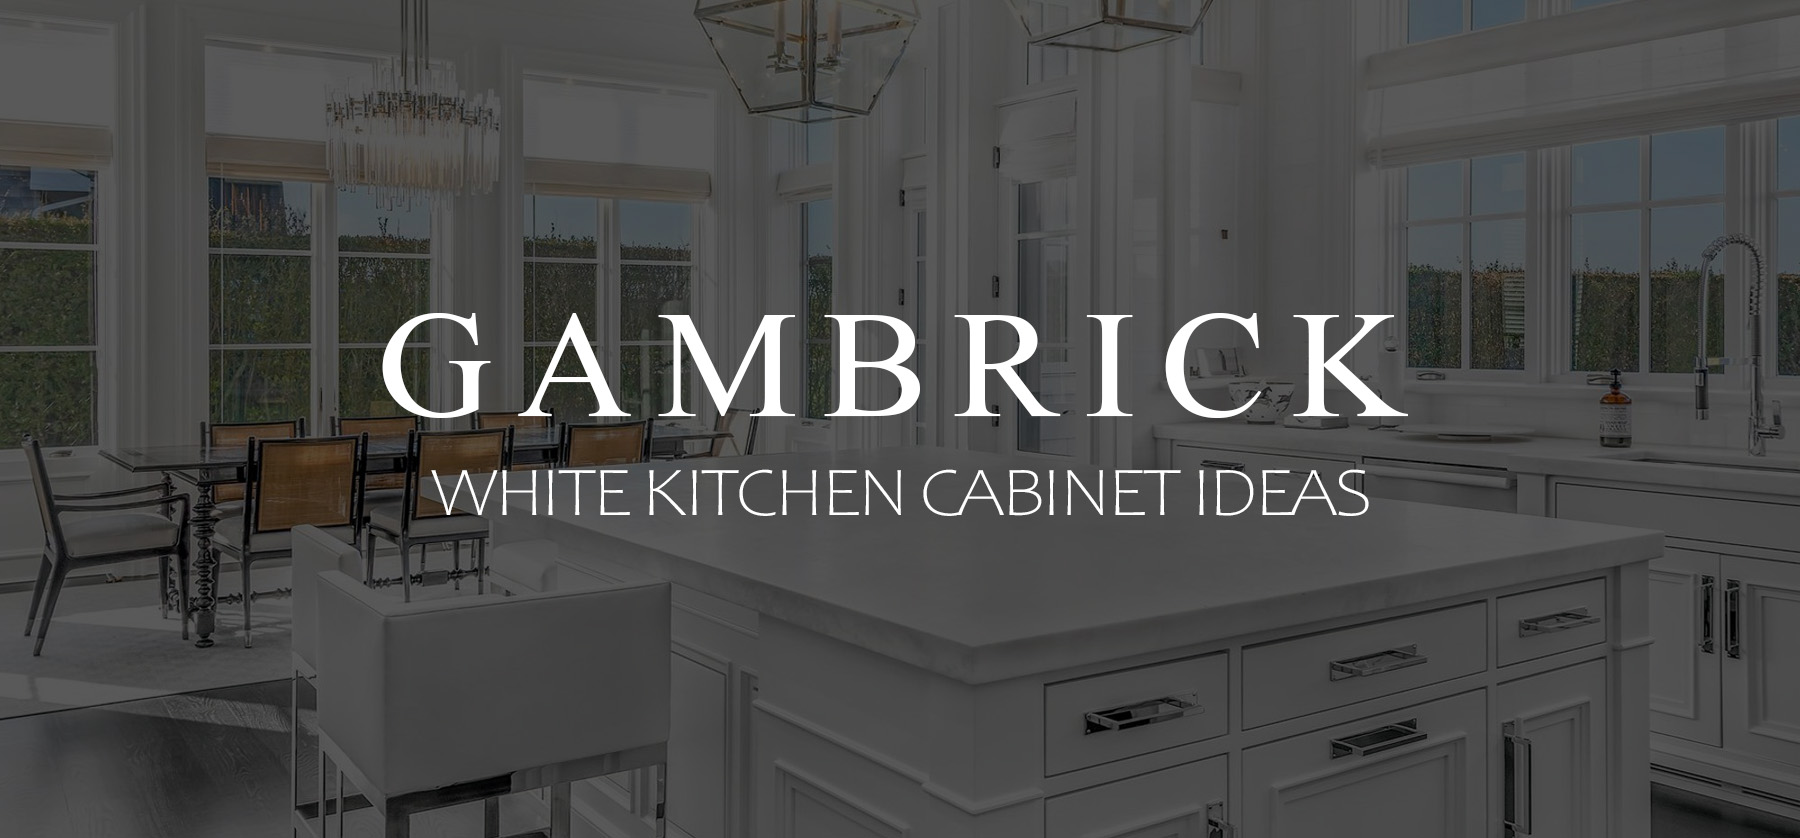 White kitchen Cabinet Ideas Banner 1